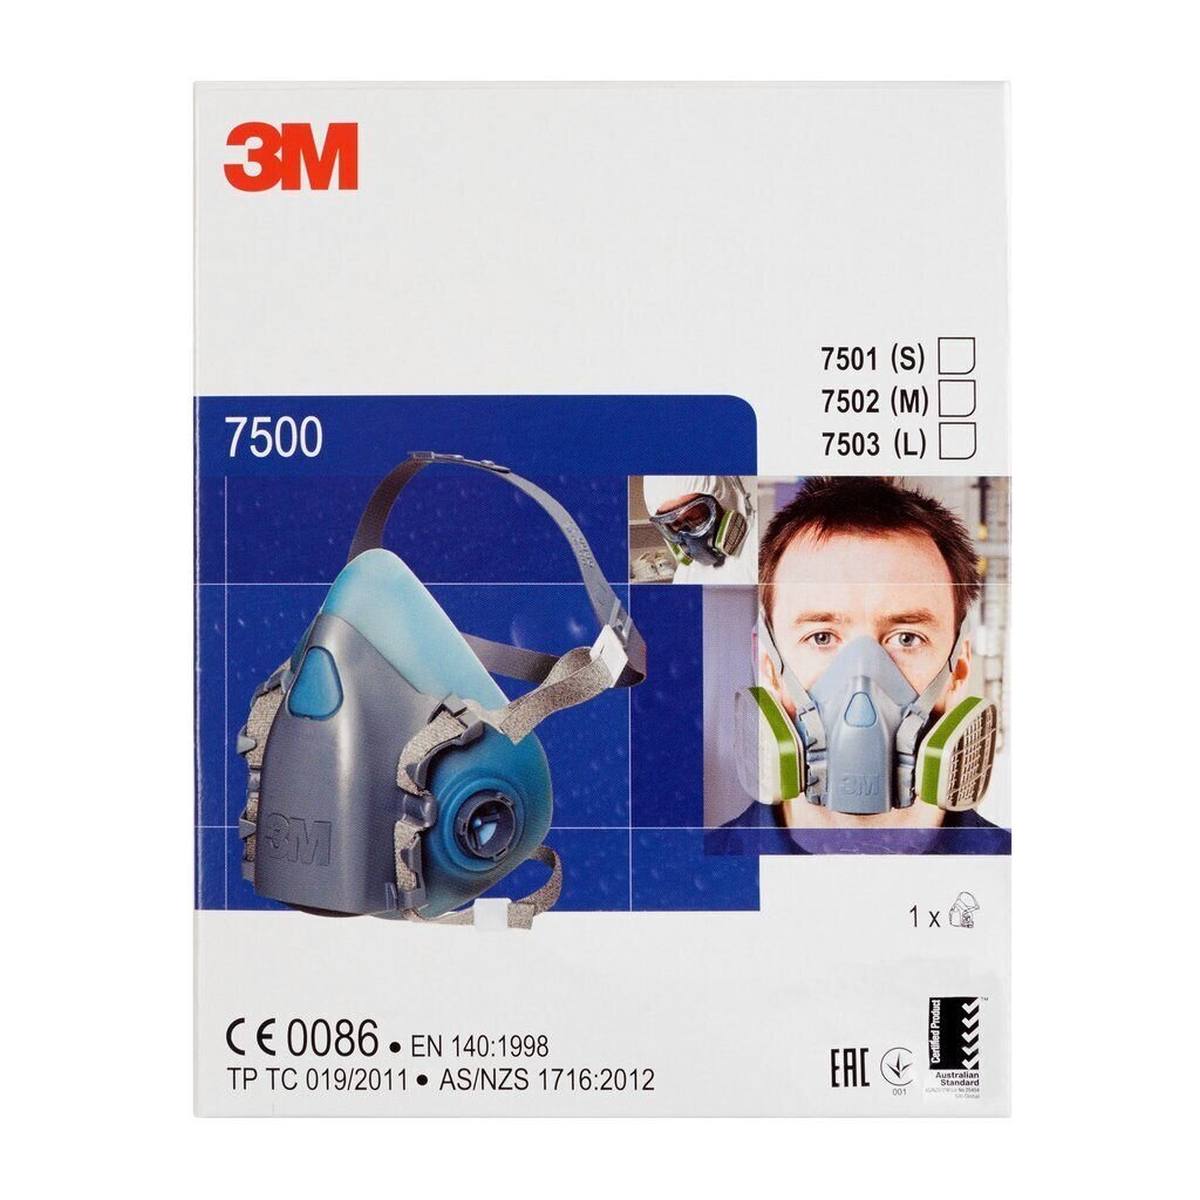 3M 7502M Media máscara cuerpo silicona / poliéster termoplástico talla M